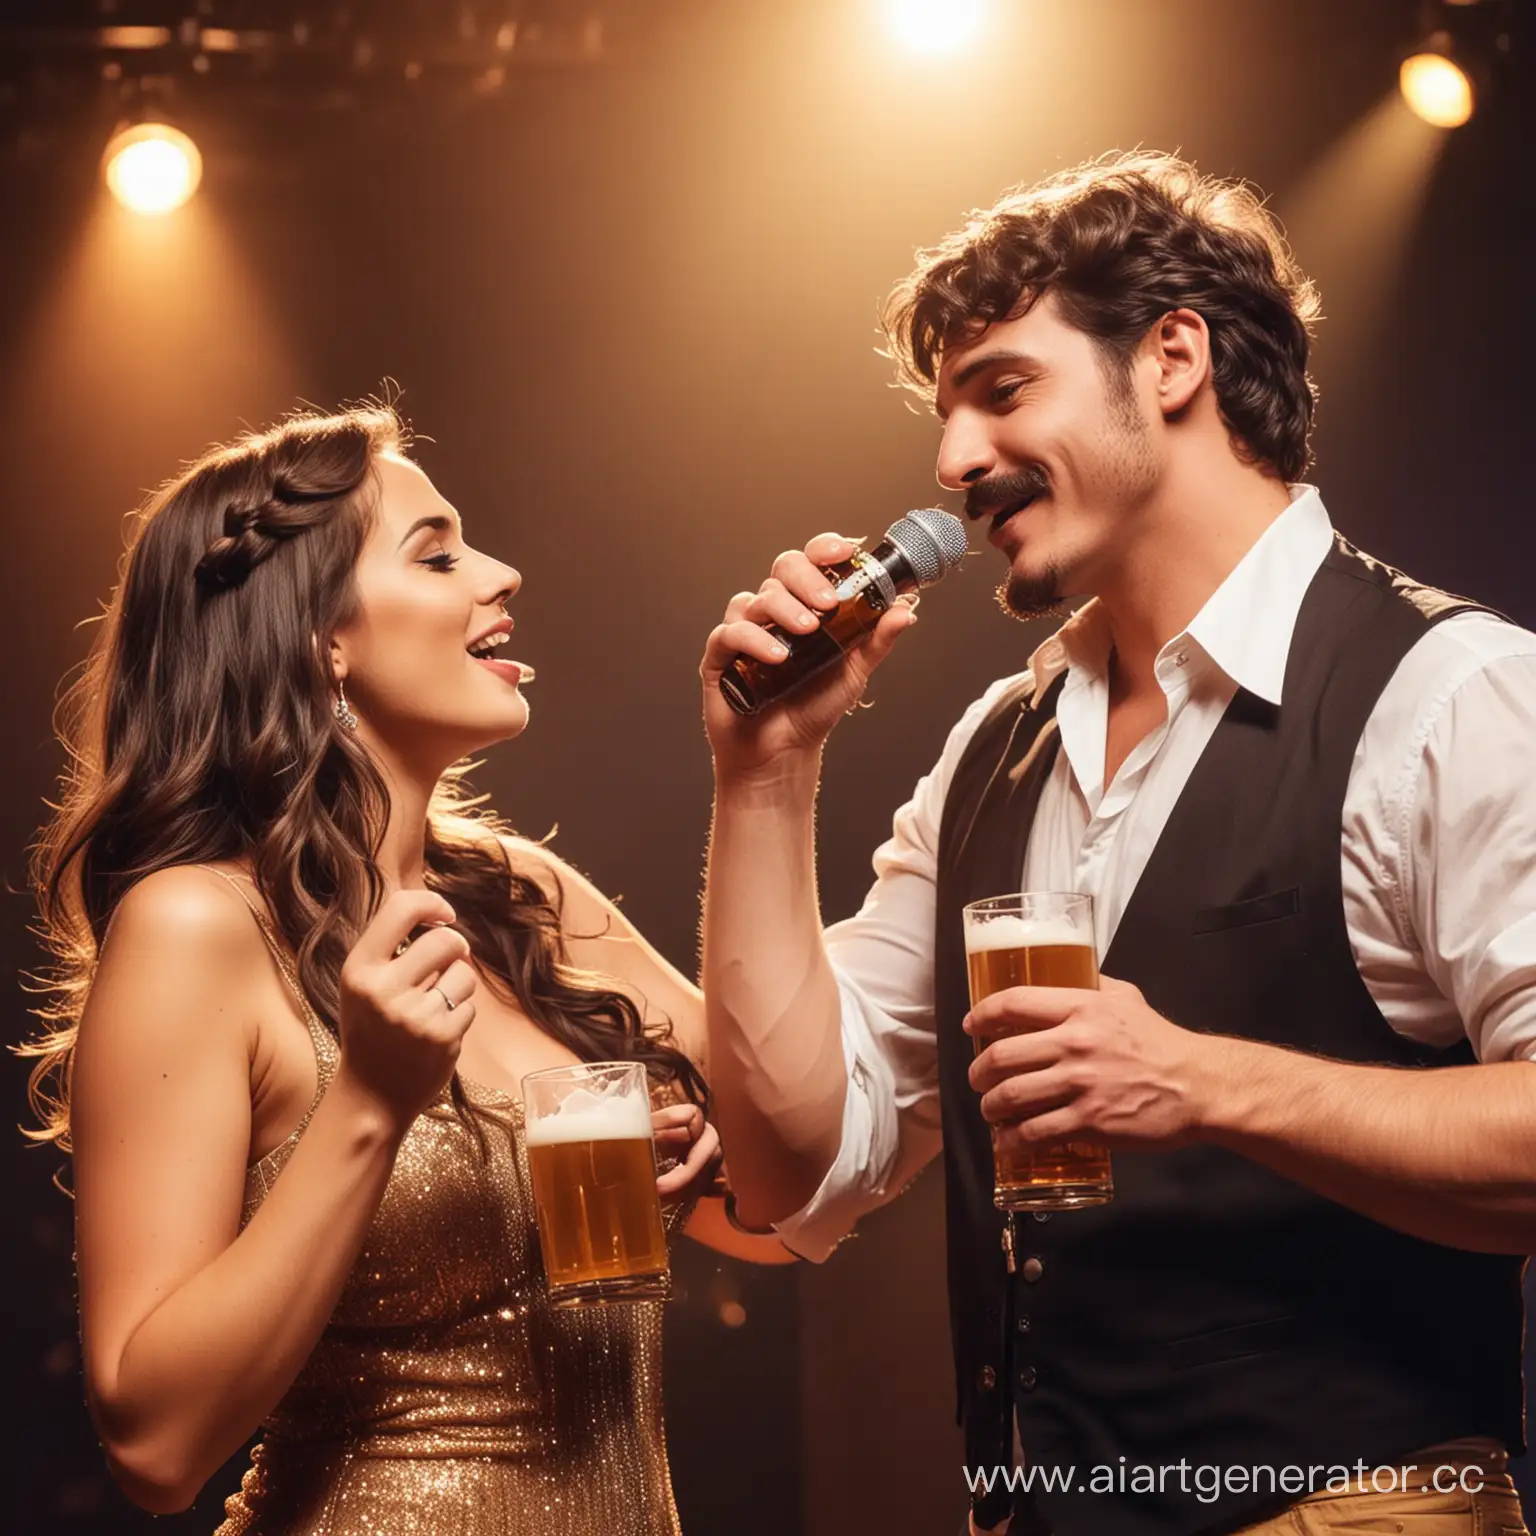 Певец поп музыки с усами и пивом в руке на сцене поет для любимой девушки